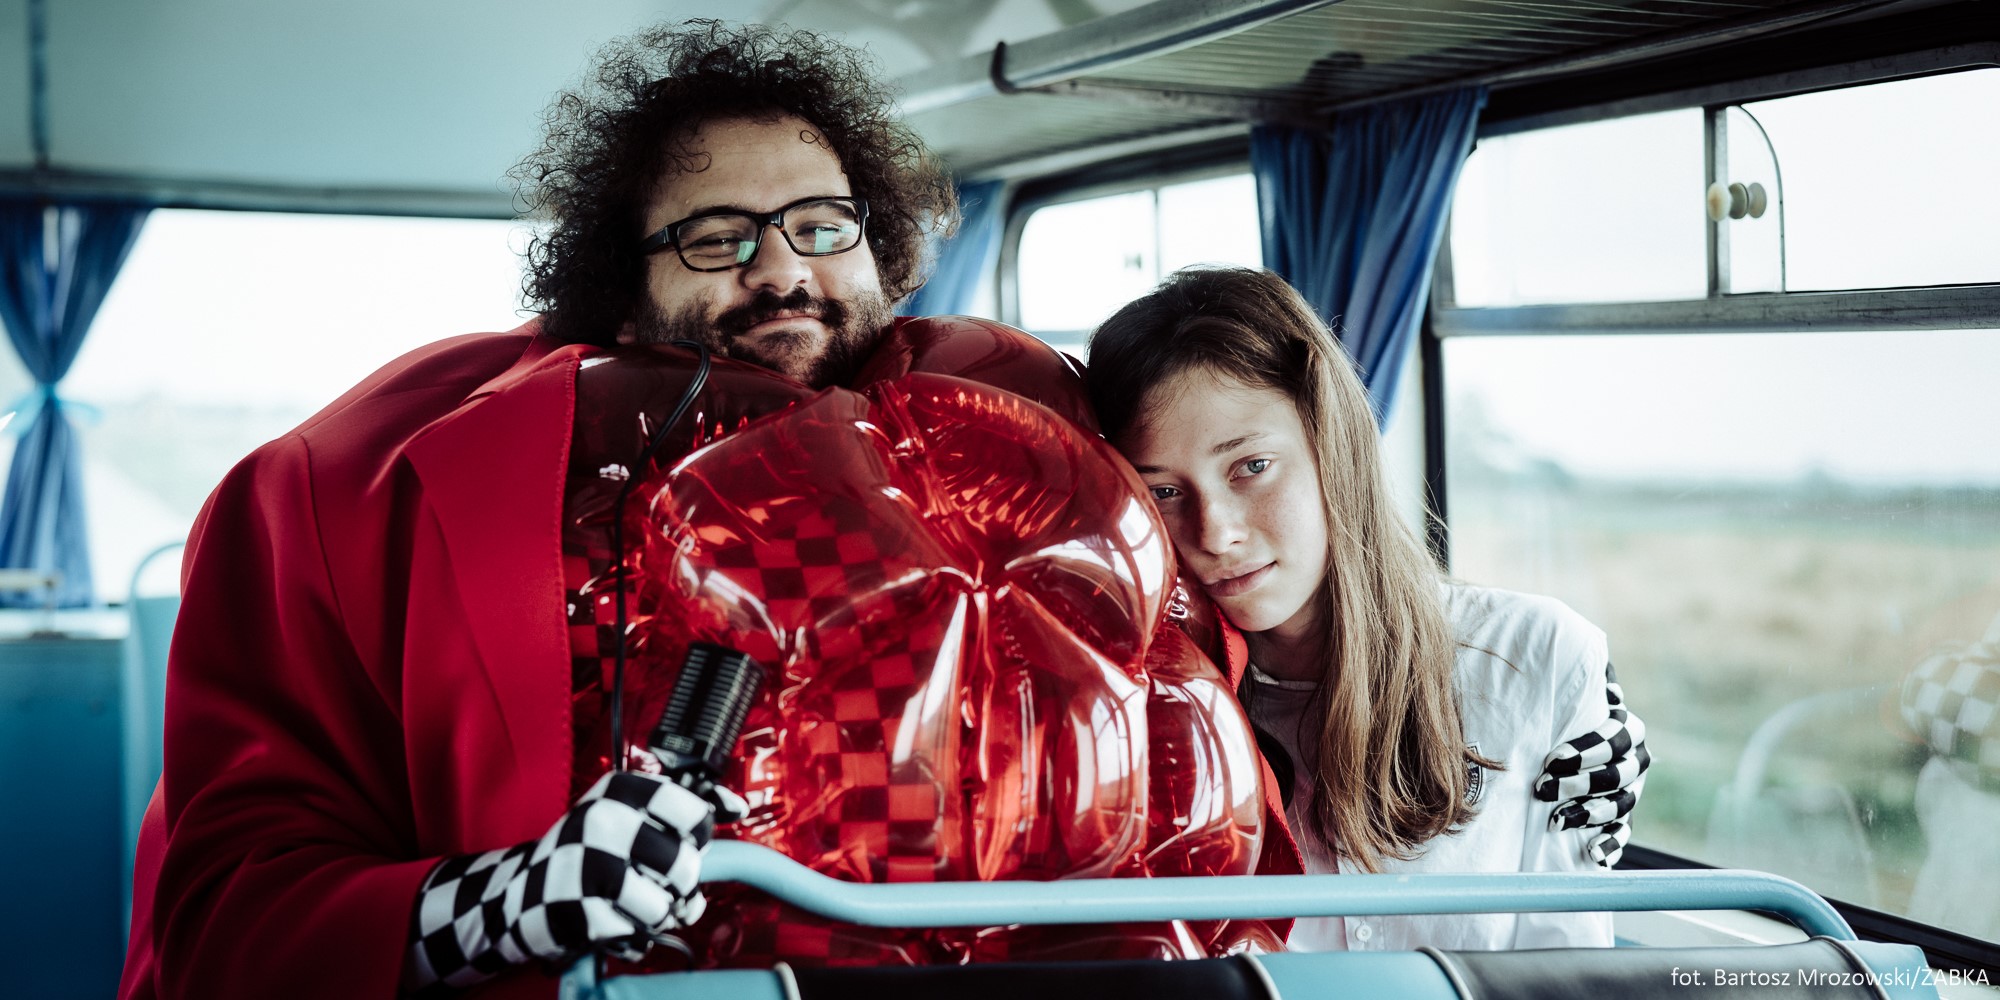 Kadr z filmu "Alicja i Żabka". Mężczyzna i dziewczyna siedzą obok siebie w autobusie. Mężczyzna ma na sobie czerwony dmuchany kostium i okulary. Dziewczyna przytula się do niego // fot. Bartosz Mrozowski